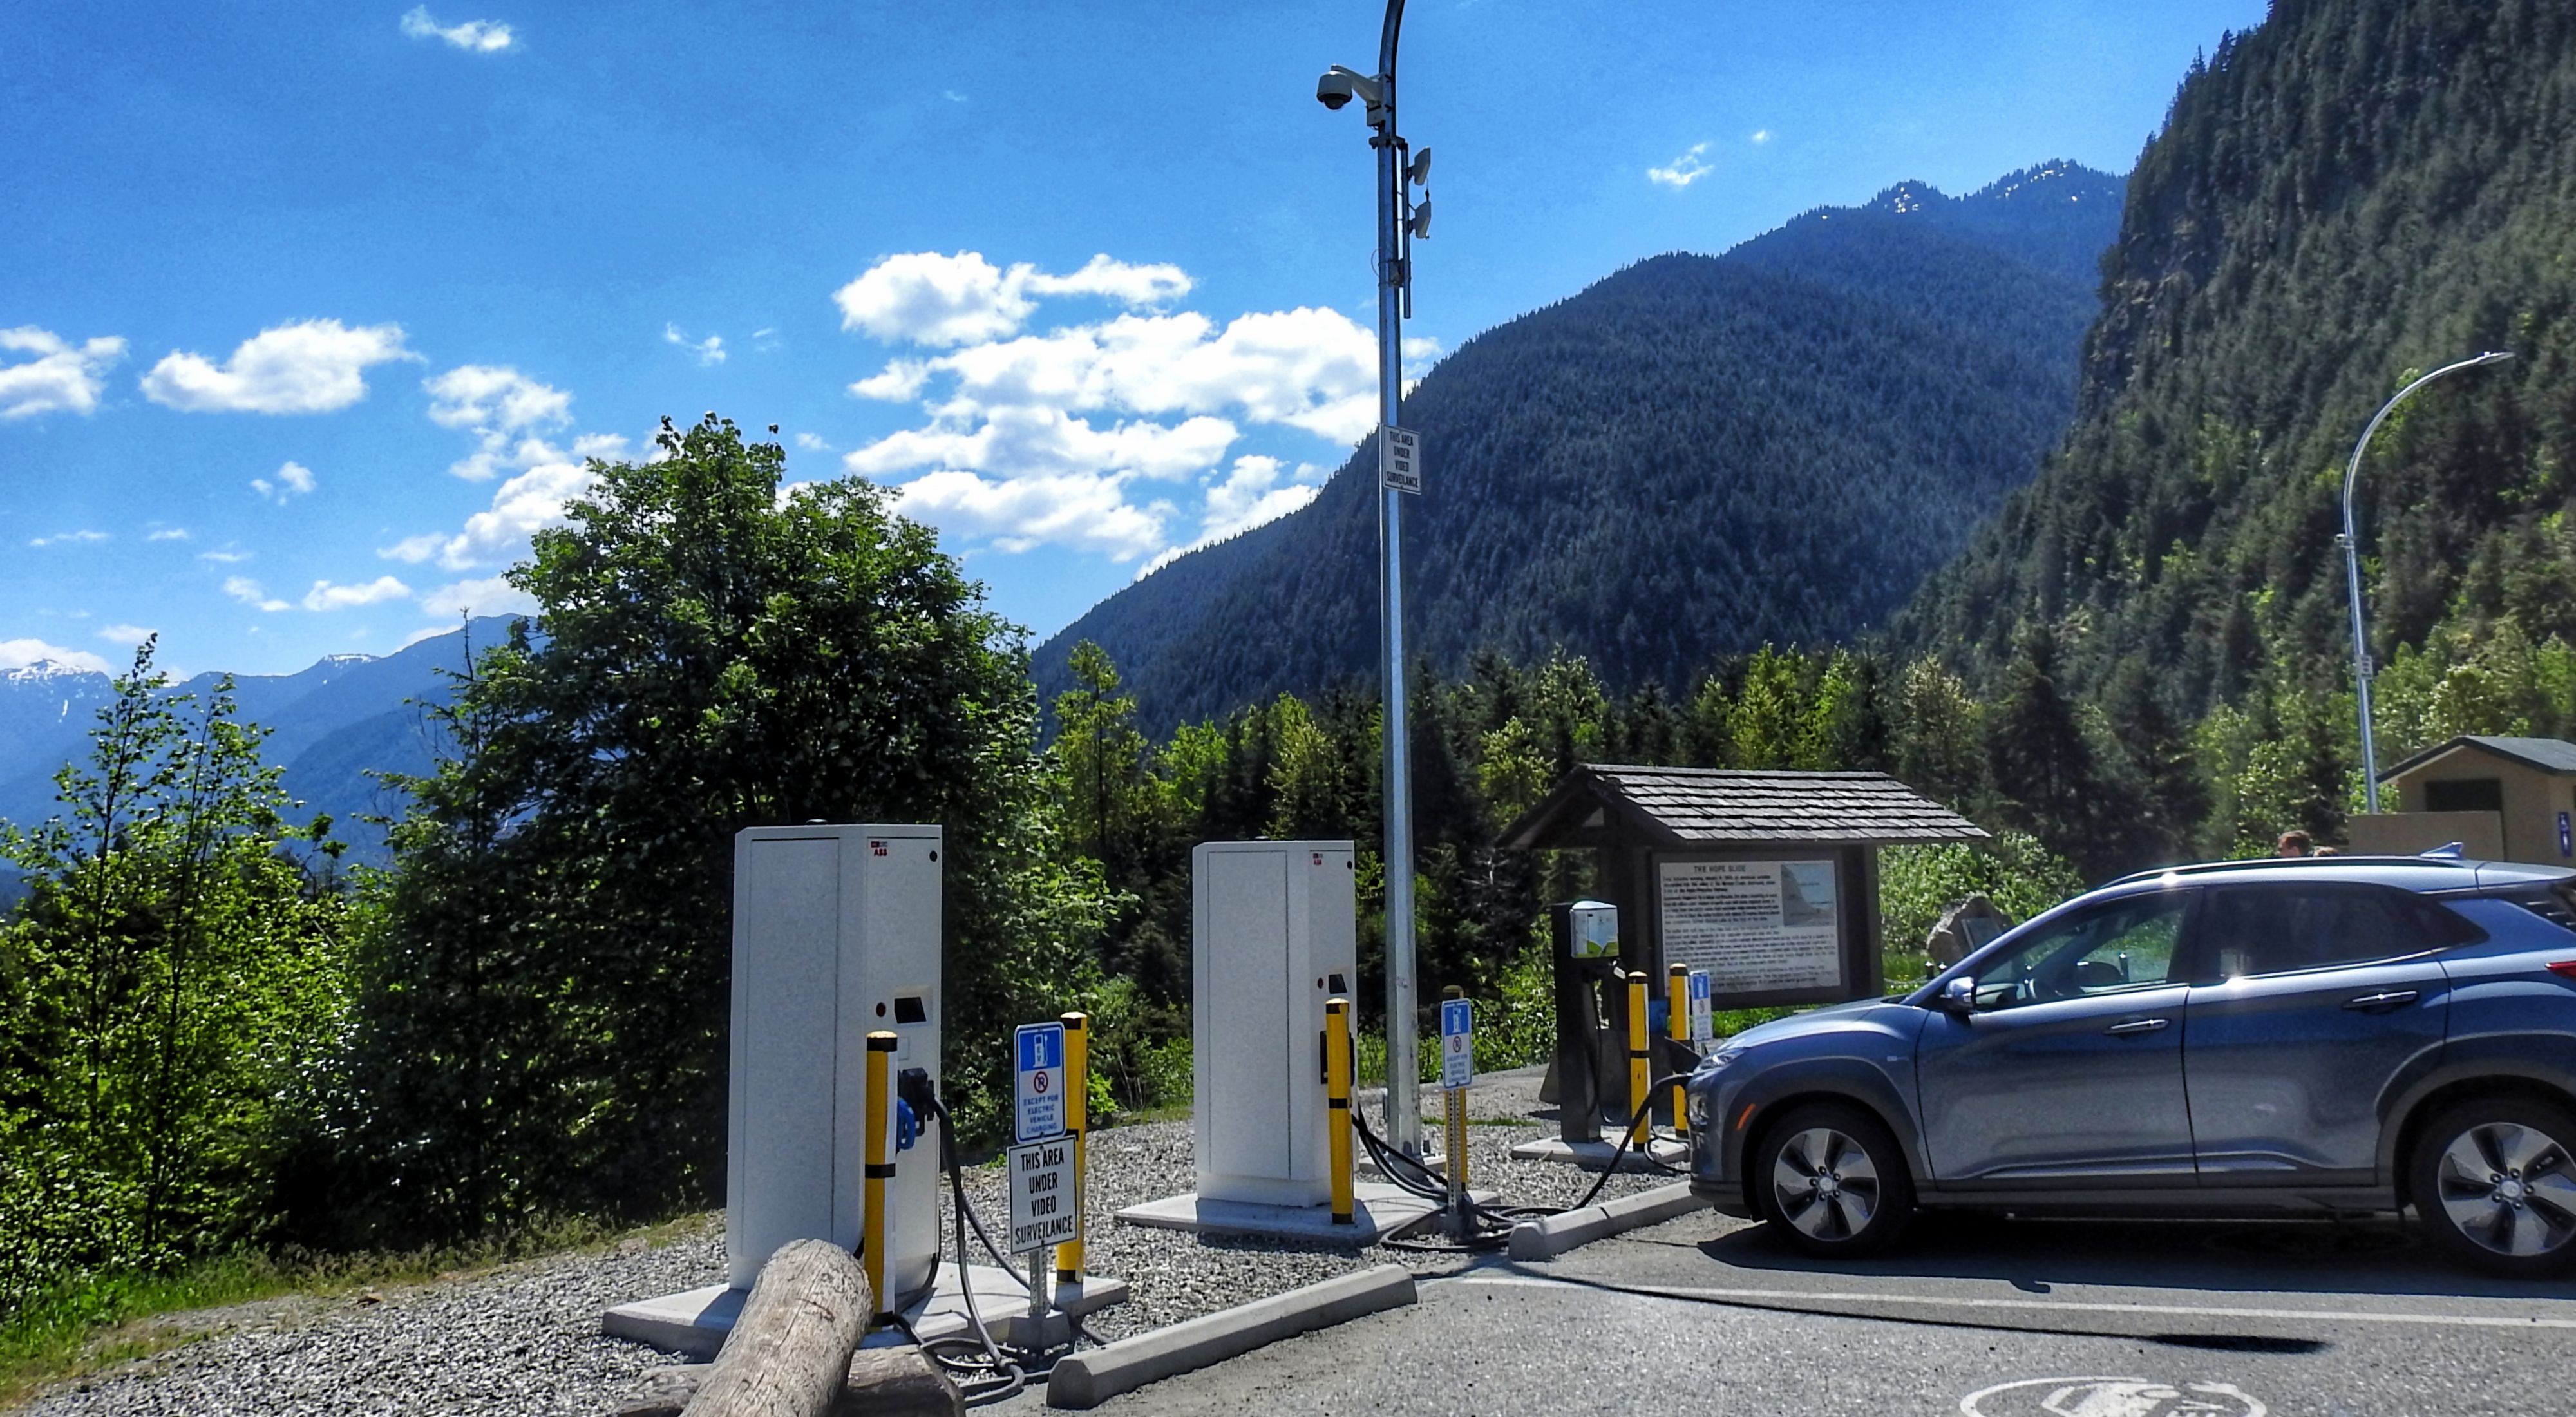 Estación de carga eléctrica para autos: ¿cómo funciona?